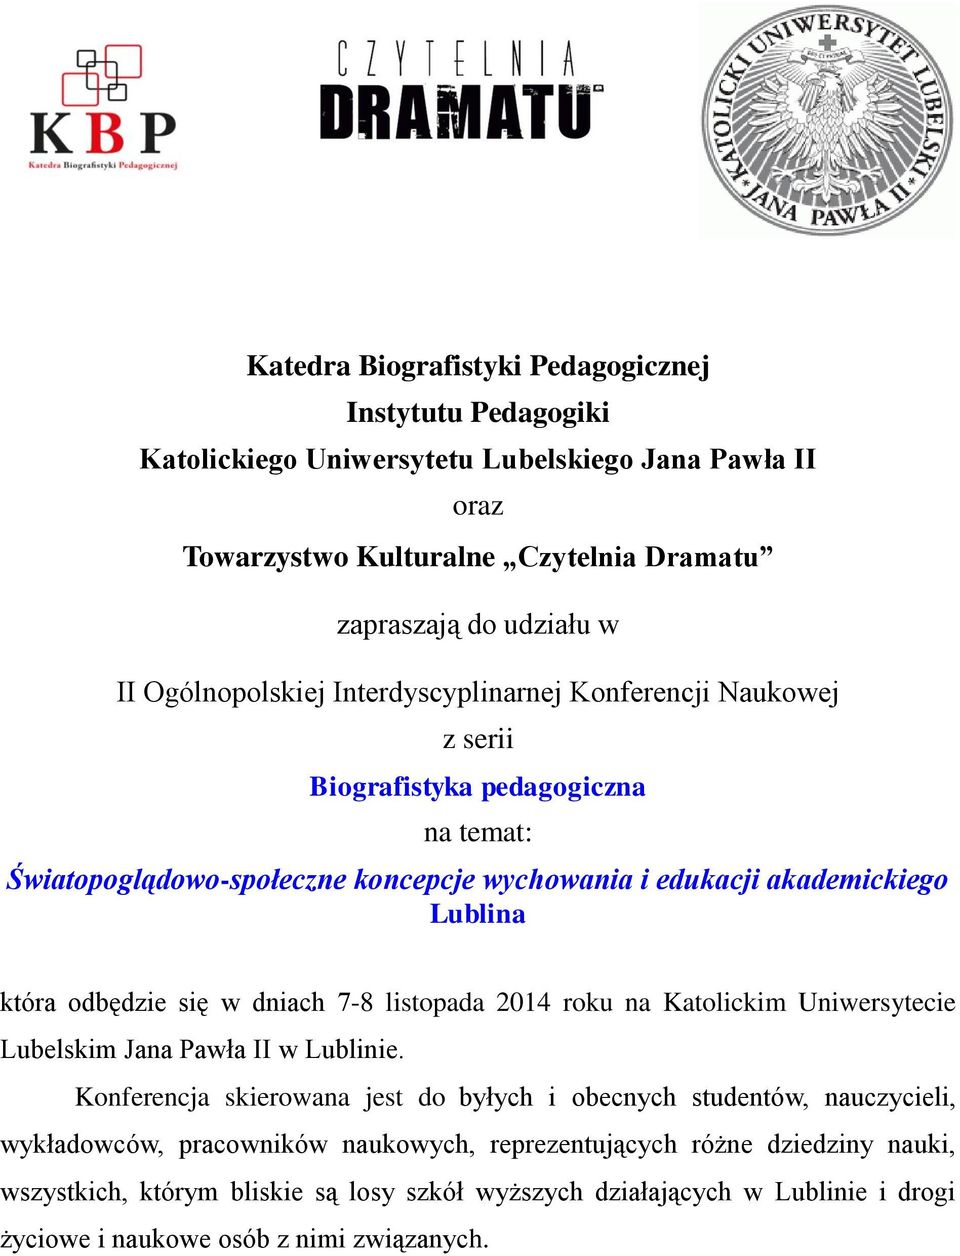 odbędzie się w dniach 7-8 listopada 2014 roku na Katolickim Uniwersytecie Lubelskim Jana Pawła II w Lublinie.